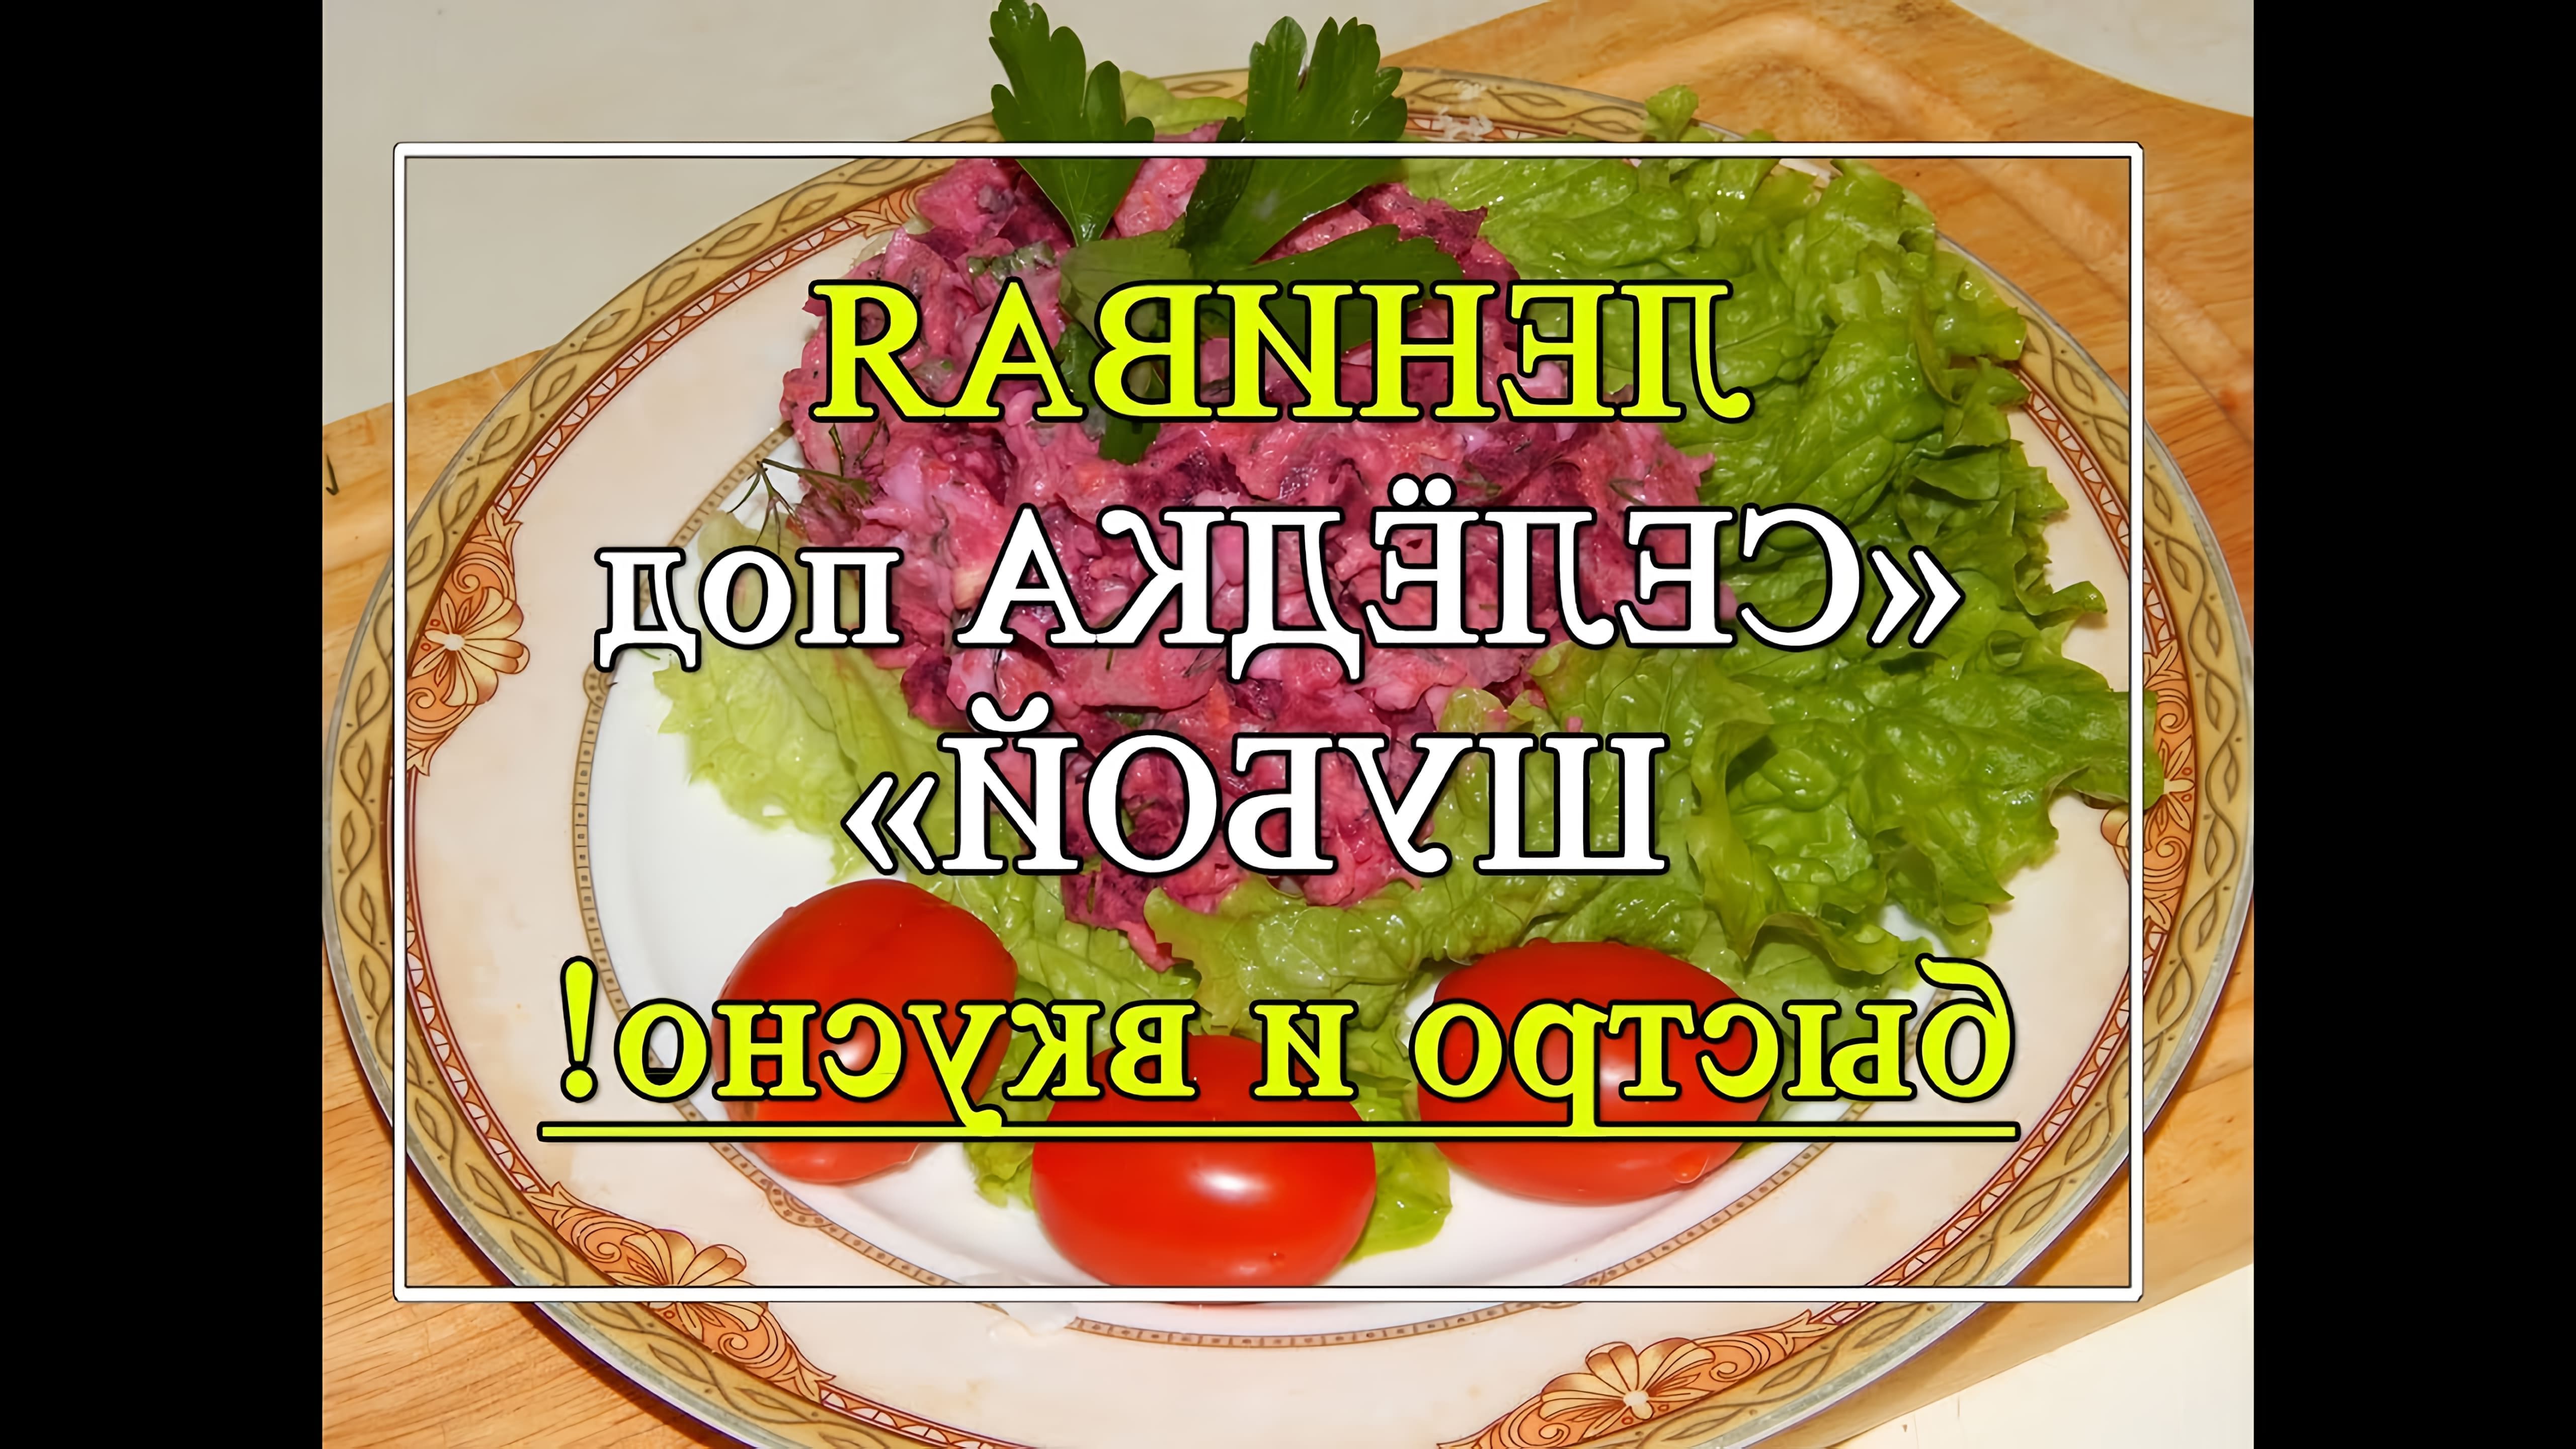 В этом видео демонстрируется рецепт салата "Селедка под шубой" для ленивых